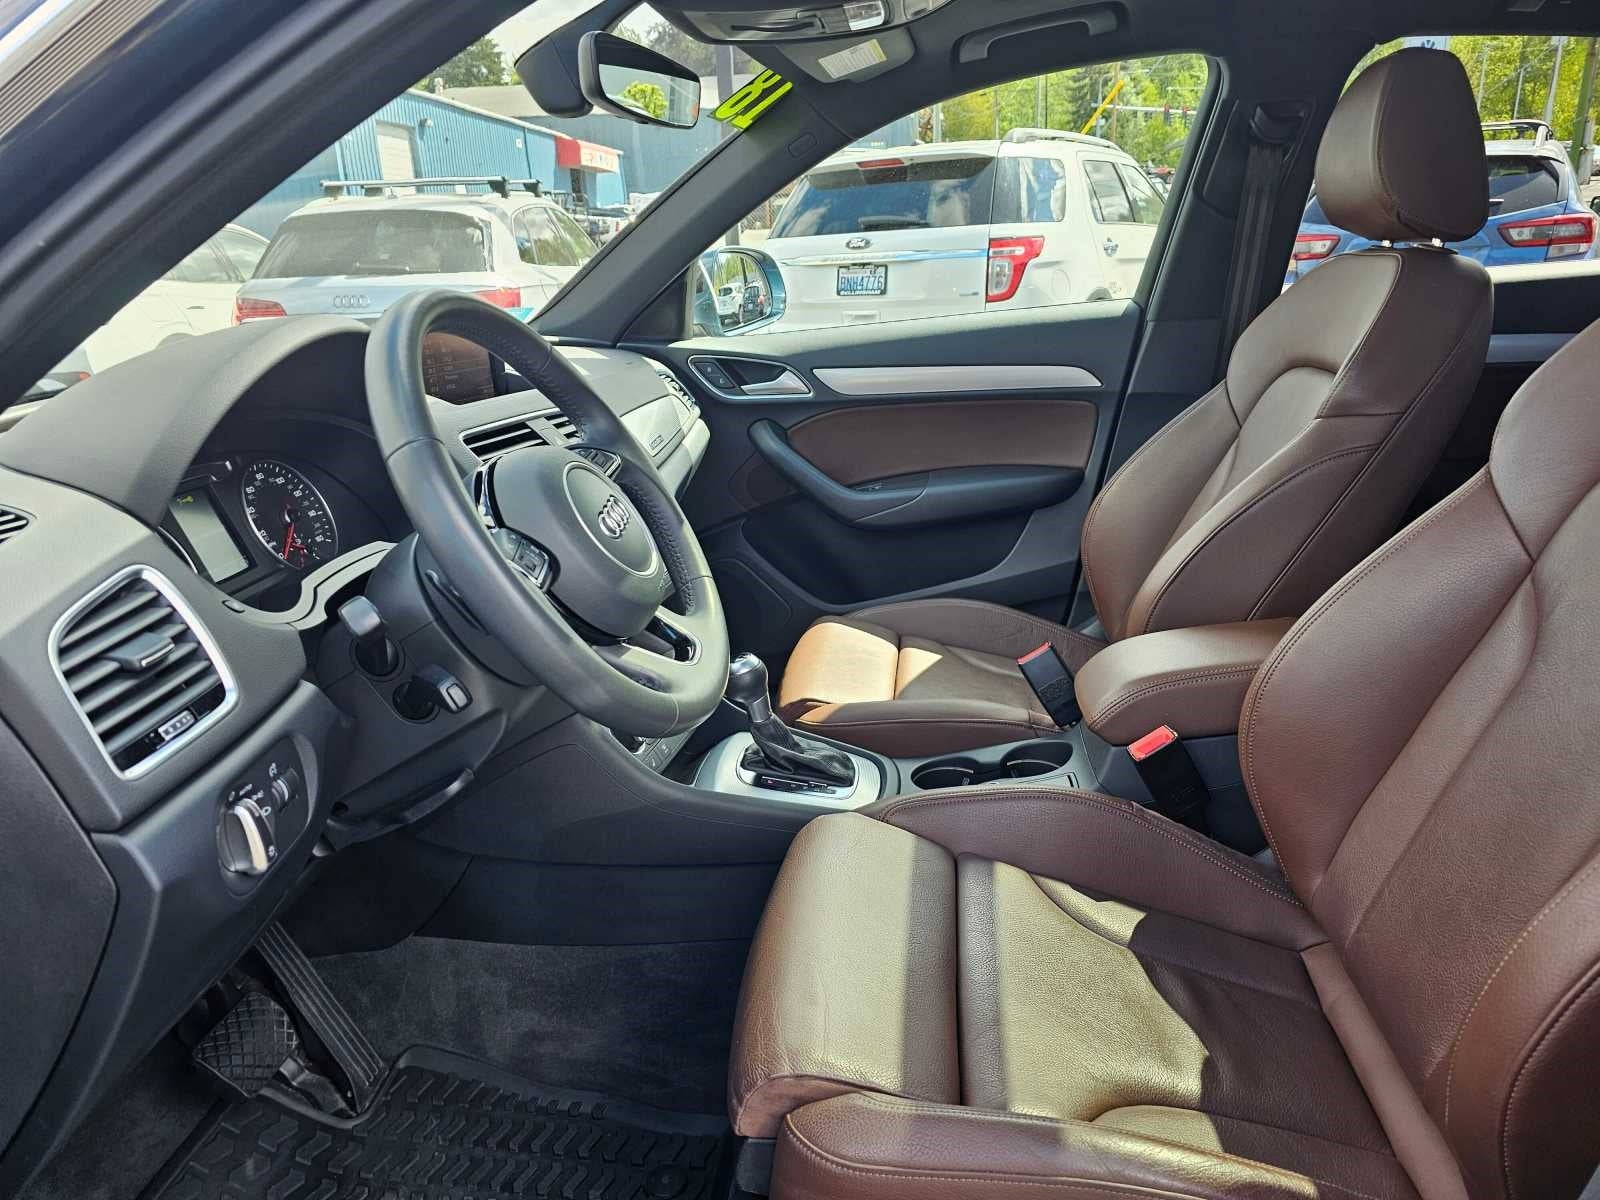 2018 Audi Q3 2.0 TFSI Premium Plus quattro AWD